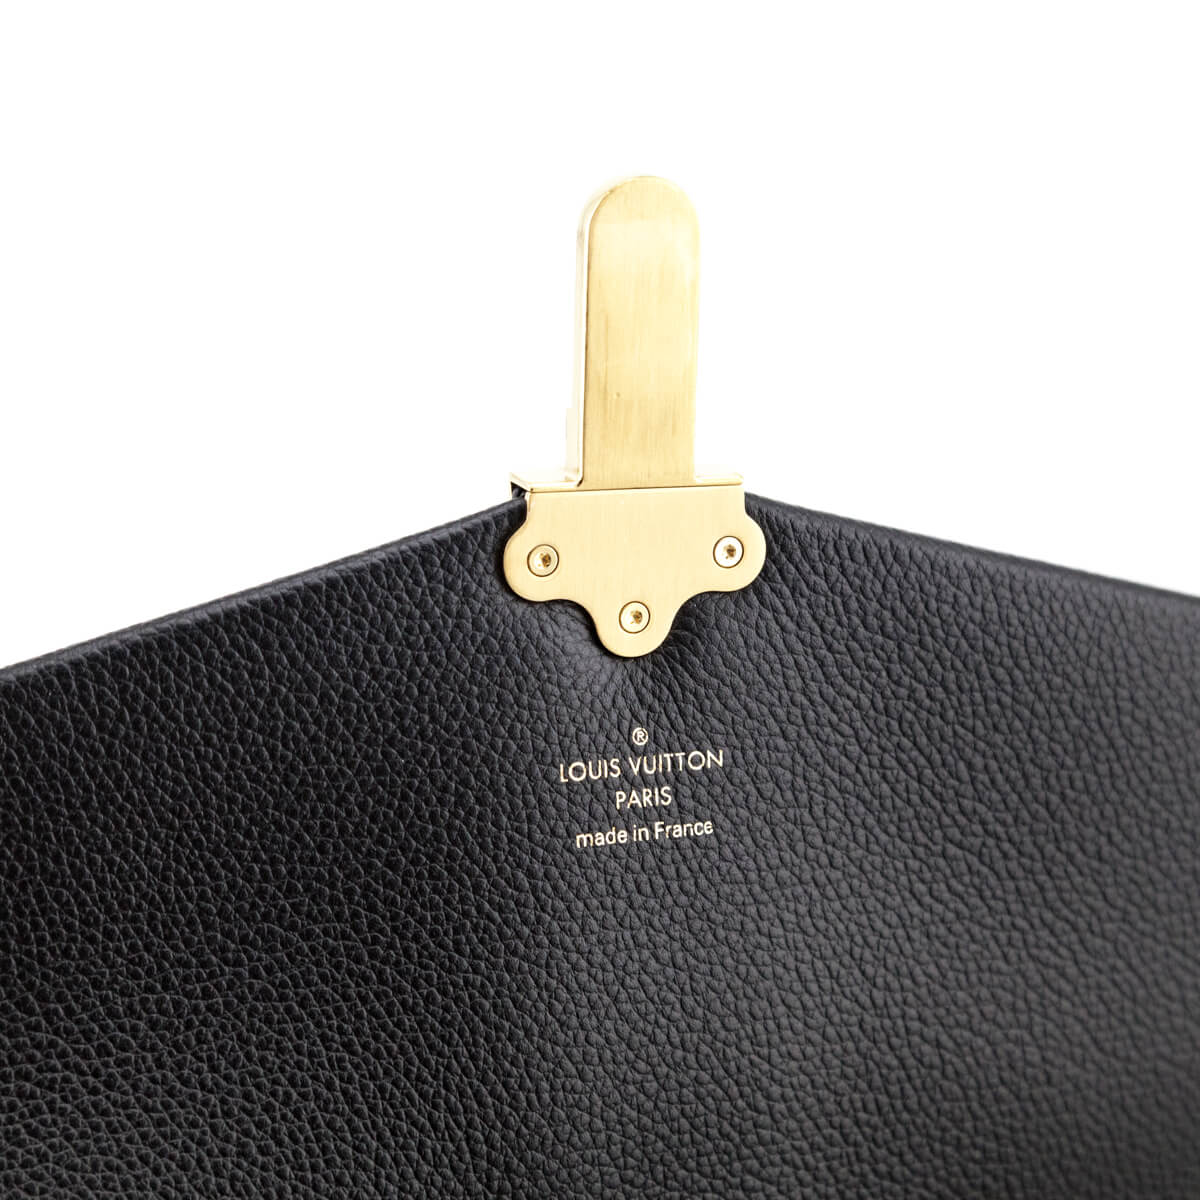 Louis Vuitton Clapton Black Damier Ébène Canvas Cross Body Bag